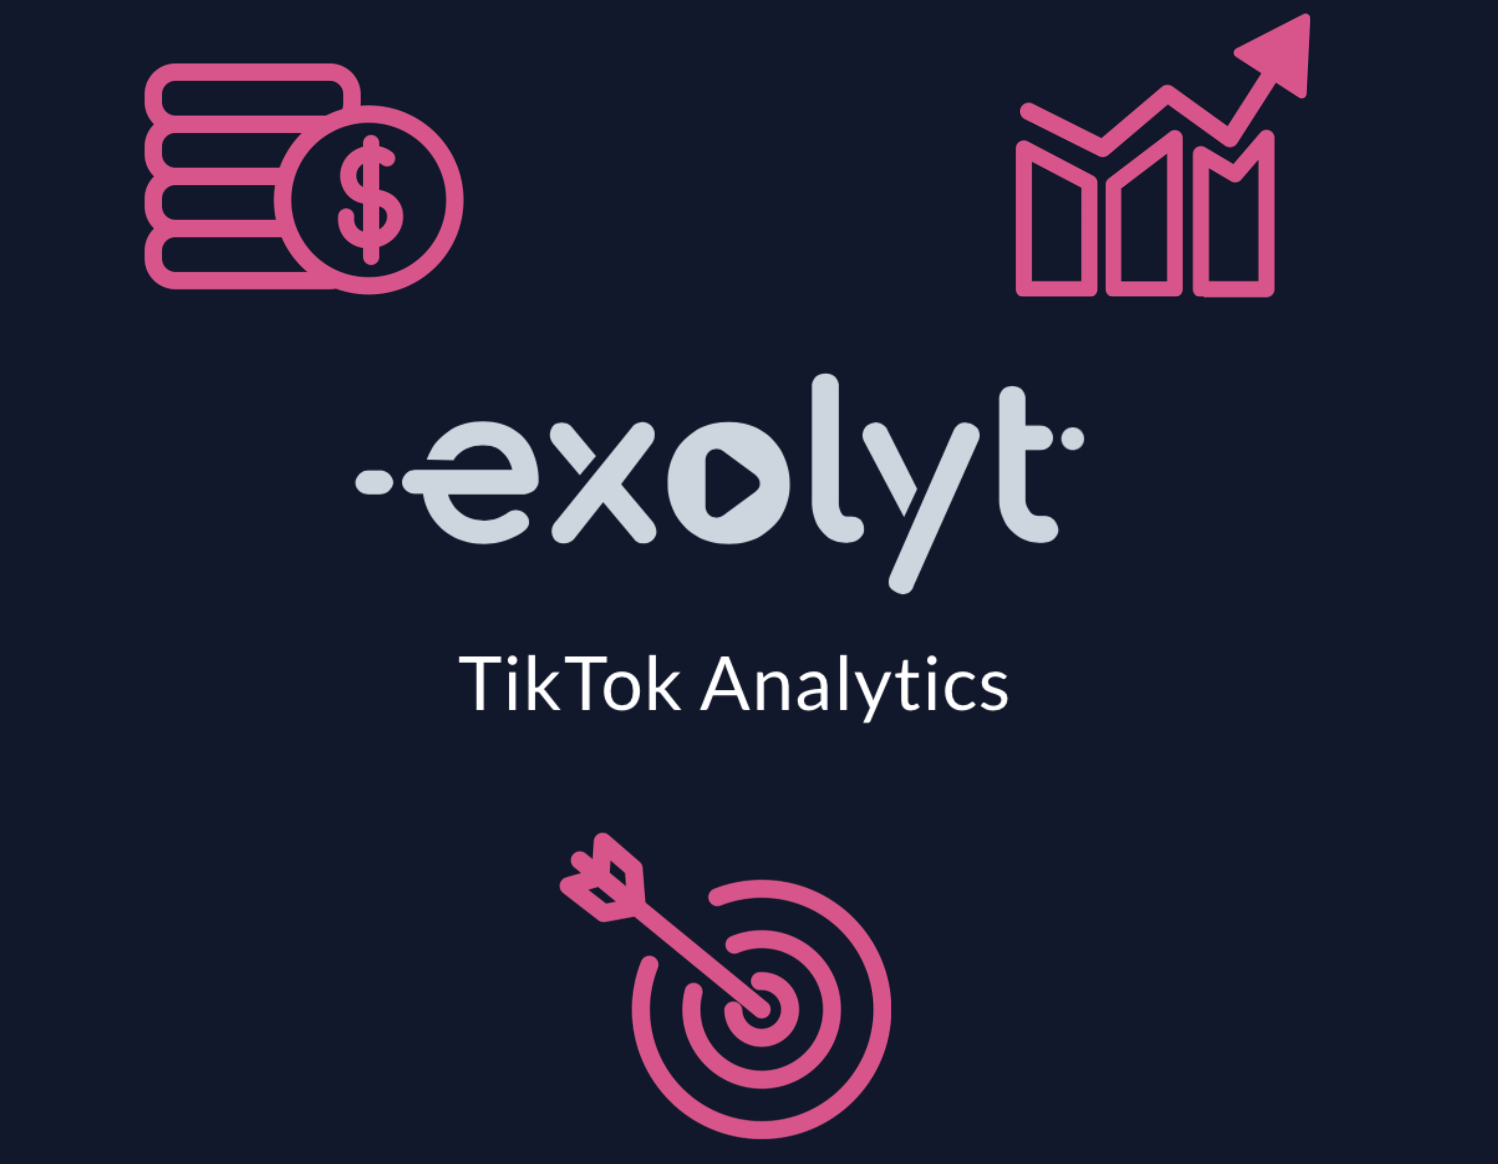 Bakit dapat gamitin ng mga ahensya ng media ang Exolyt para sa analytics ng TikTok